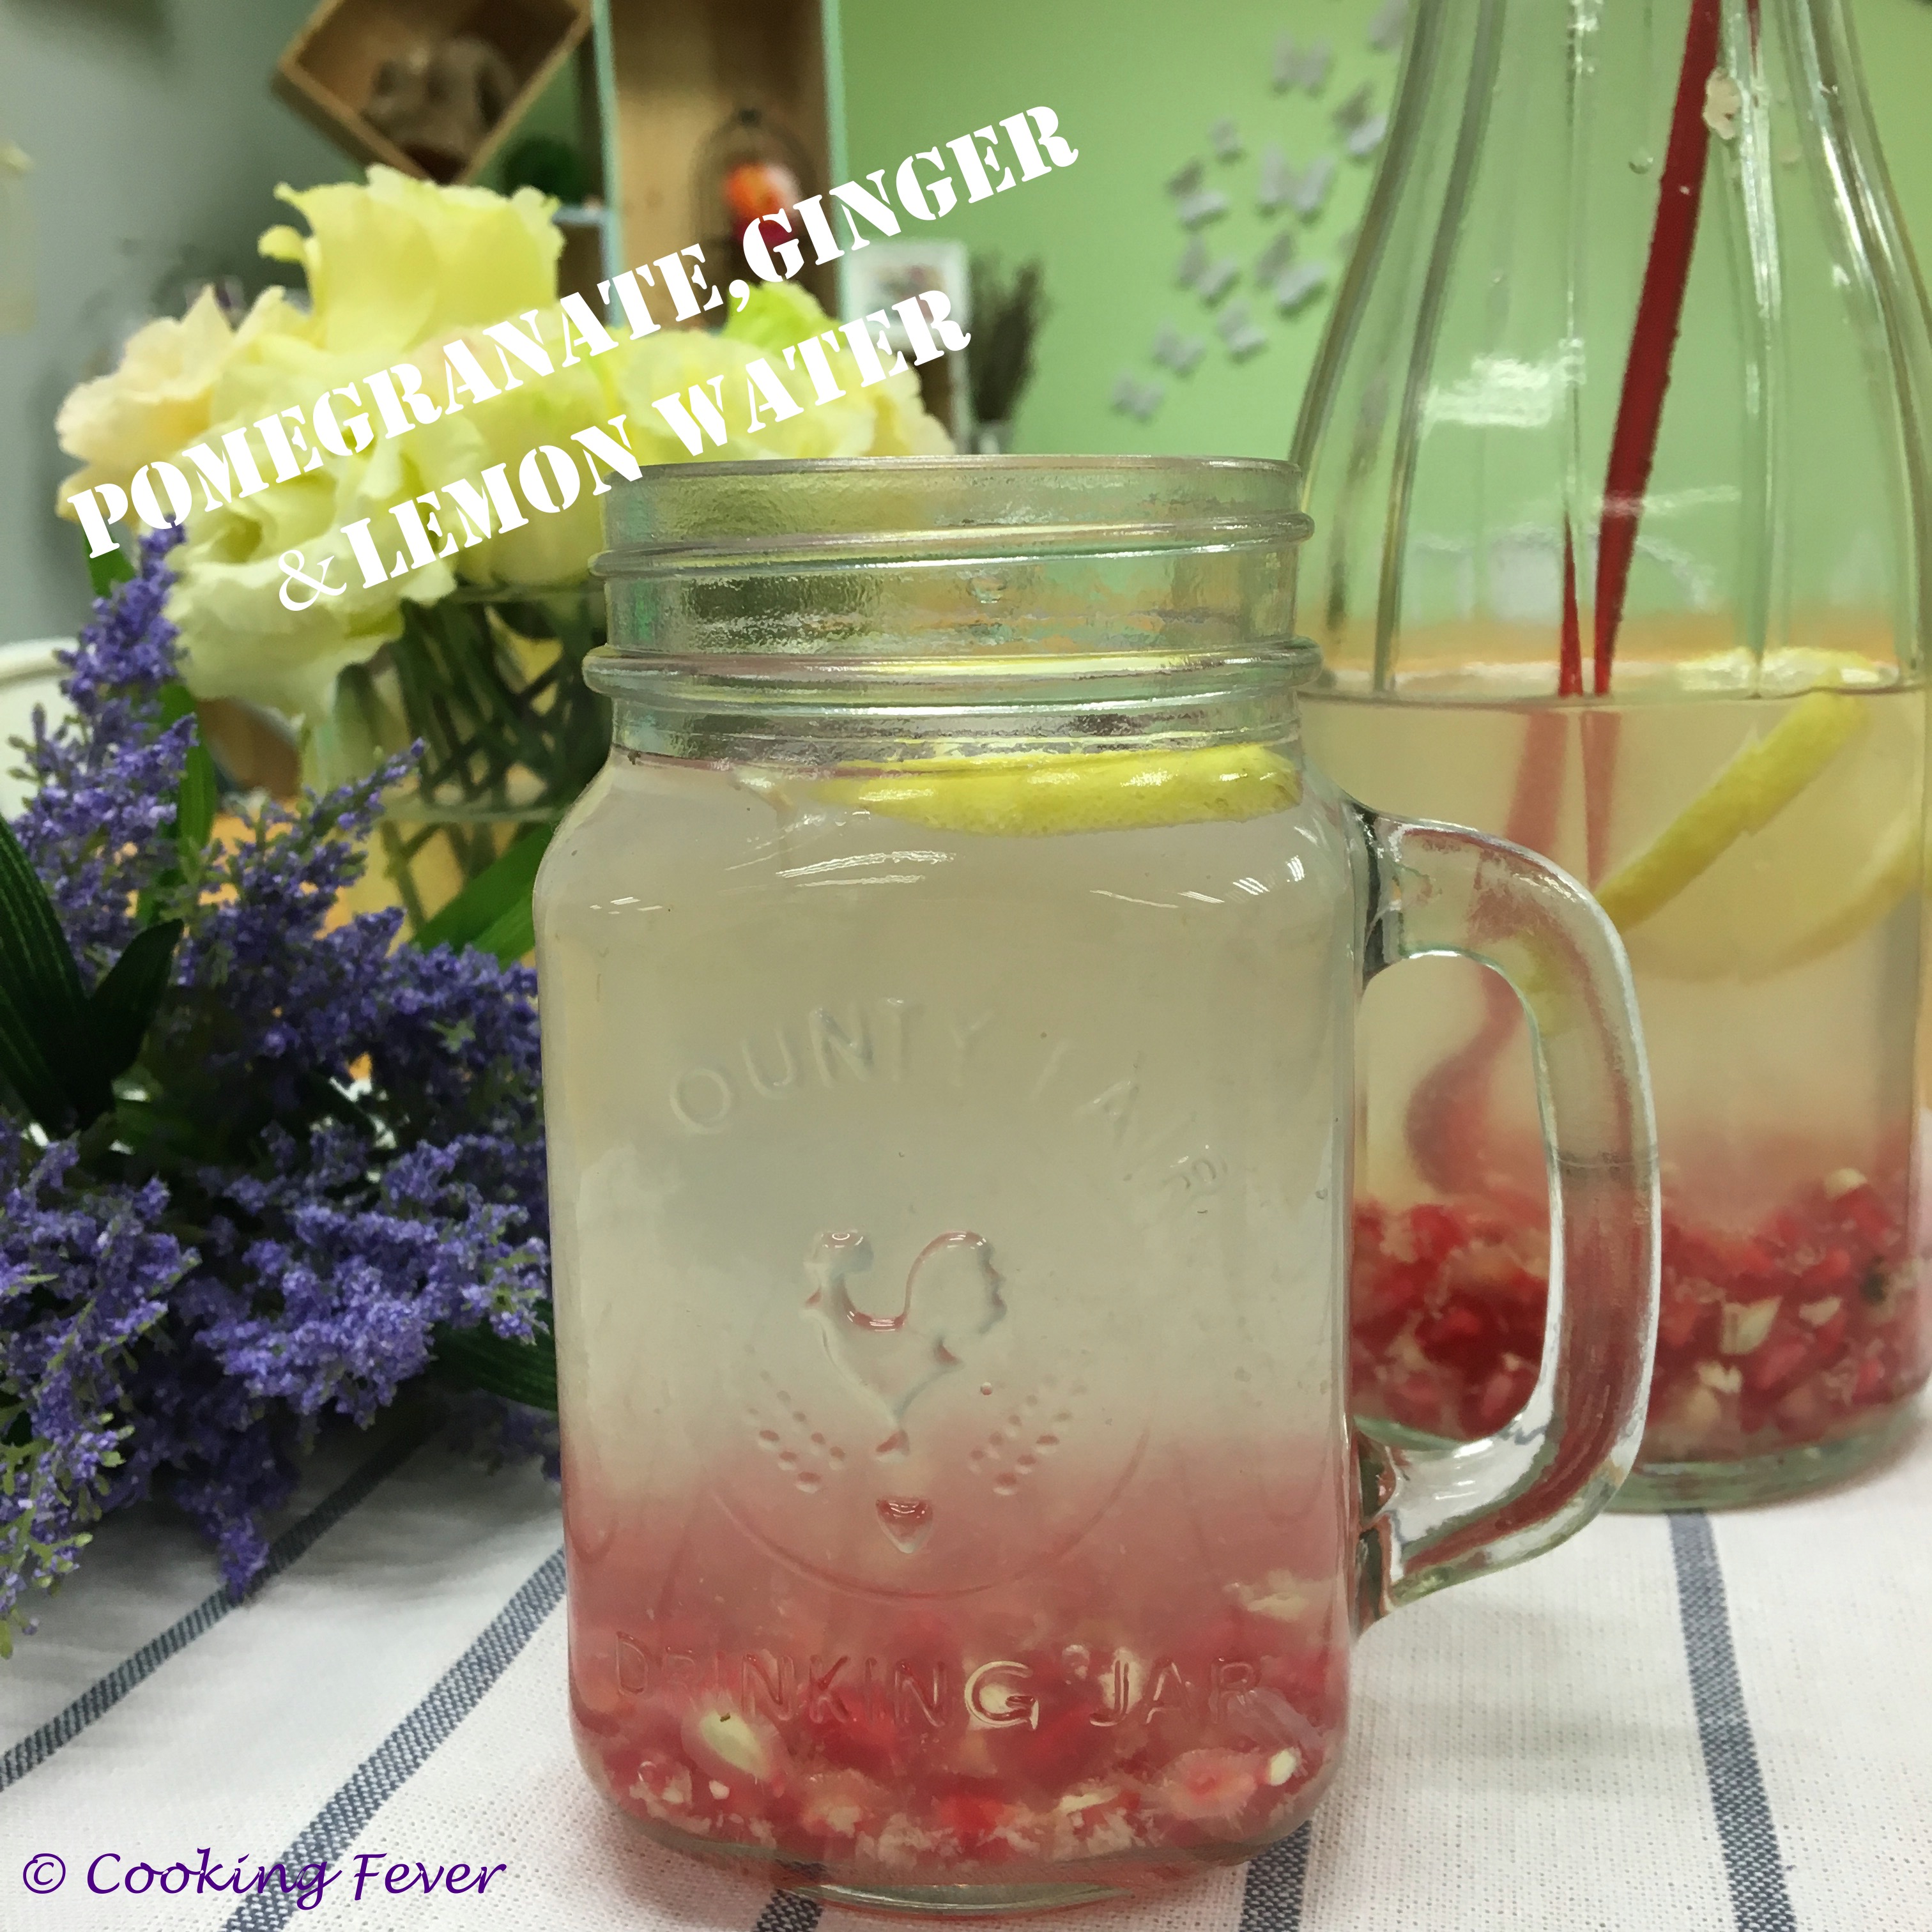 Pomegranate, ginger & lemon water